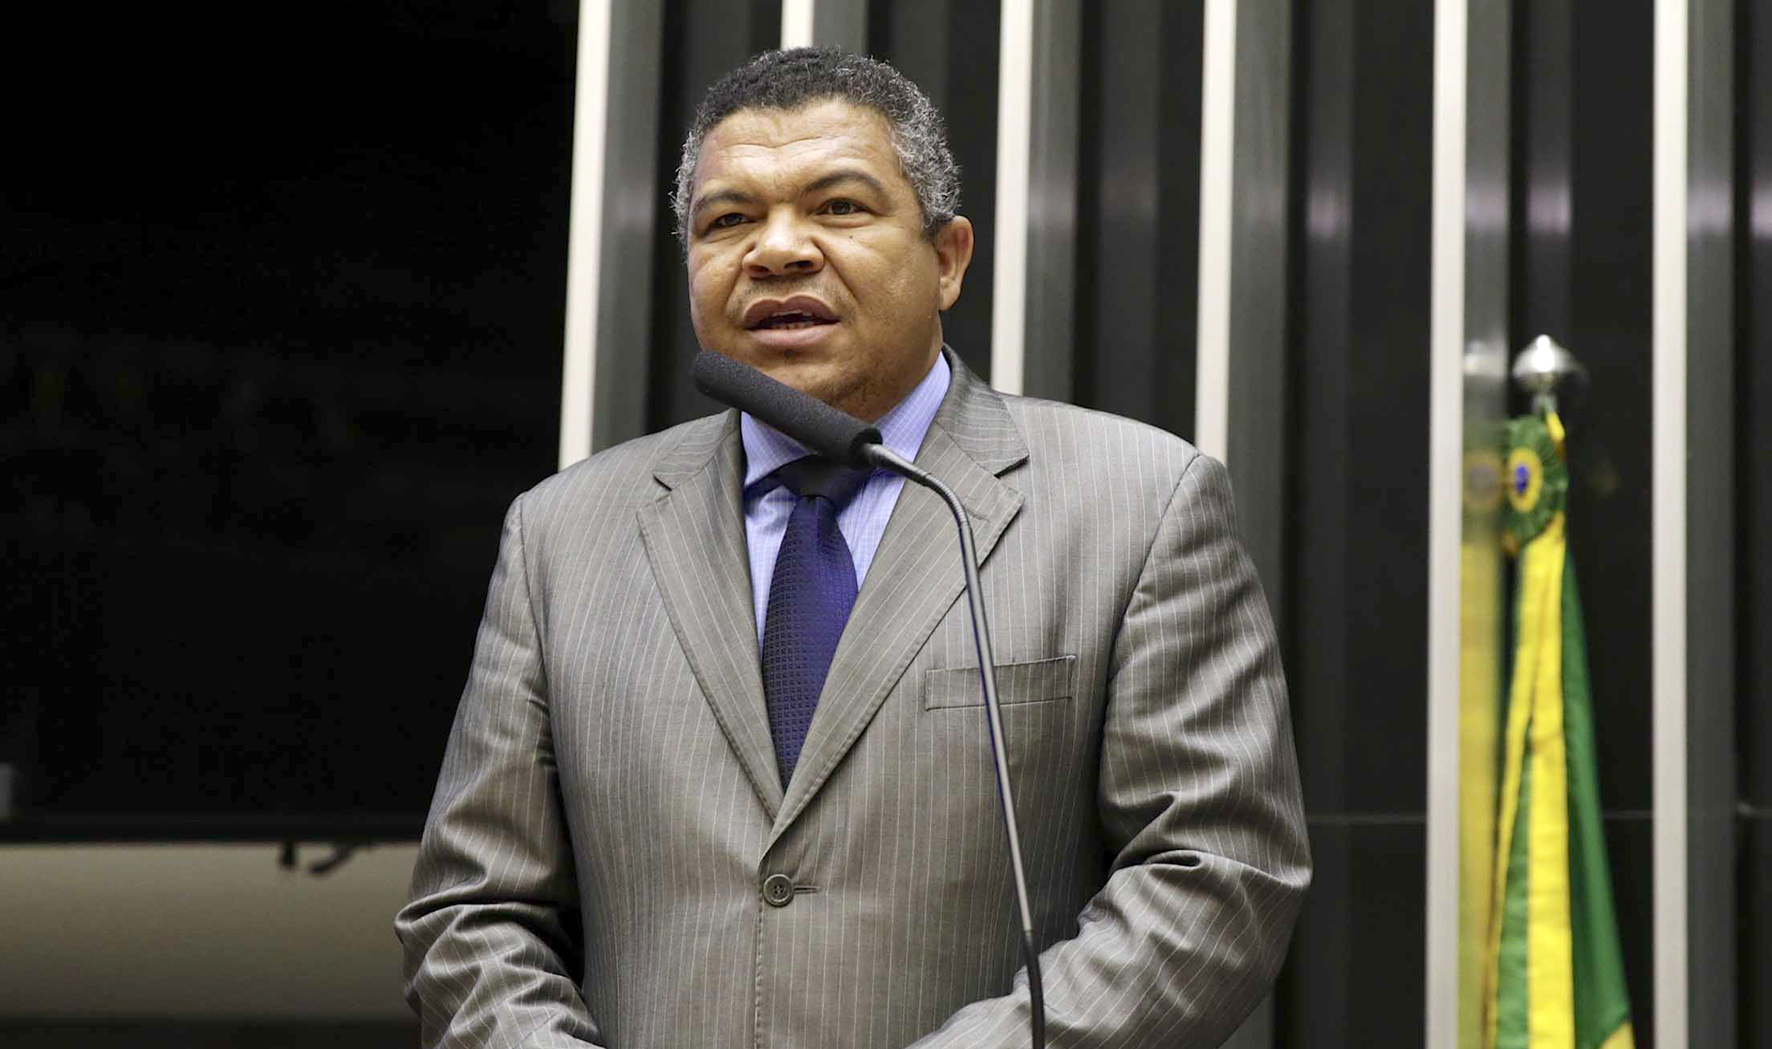 “O povo anseia pela candidatura de Lula”, diz Valmir Assunção